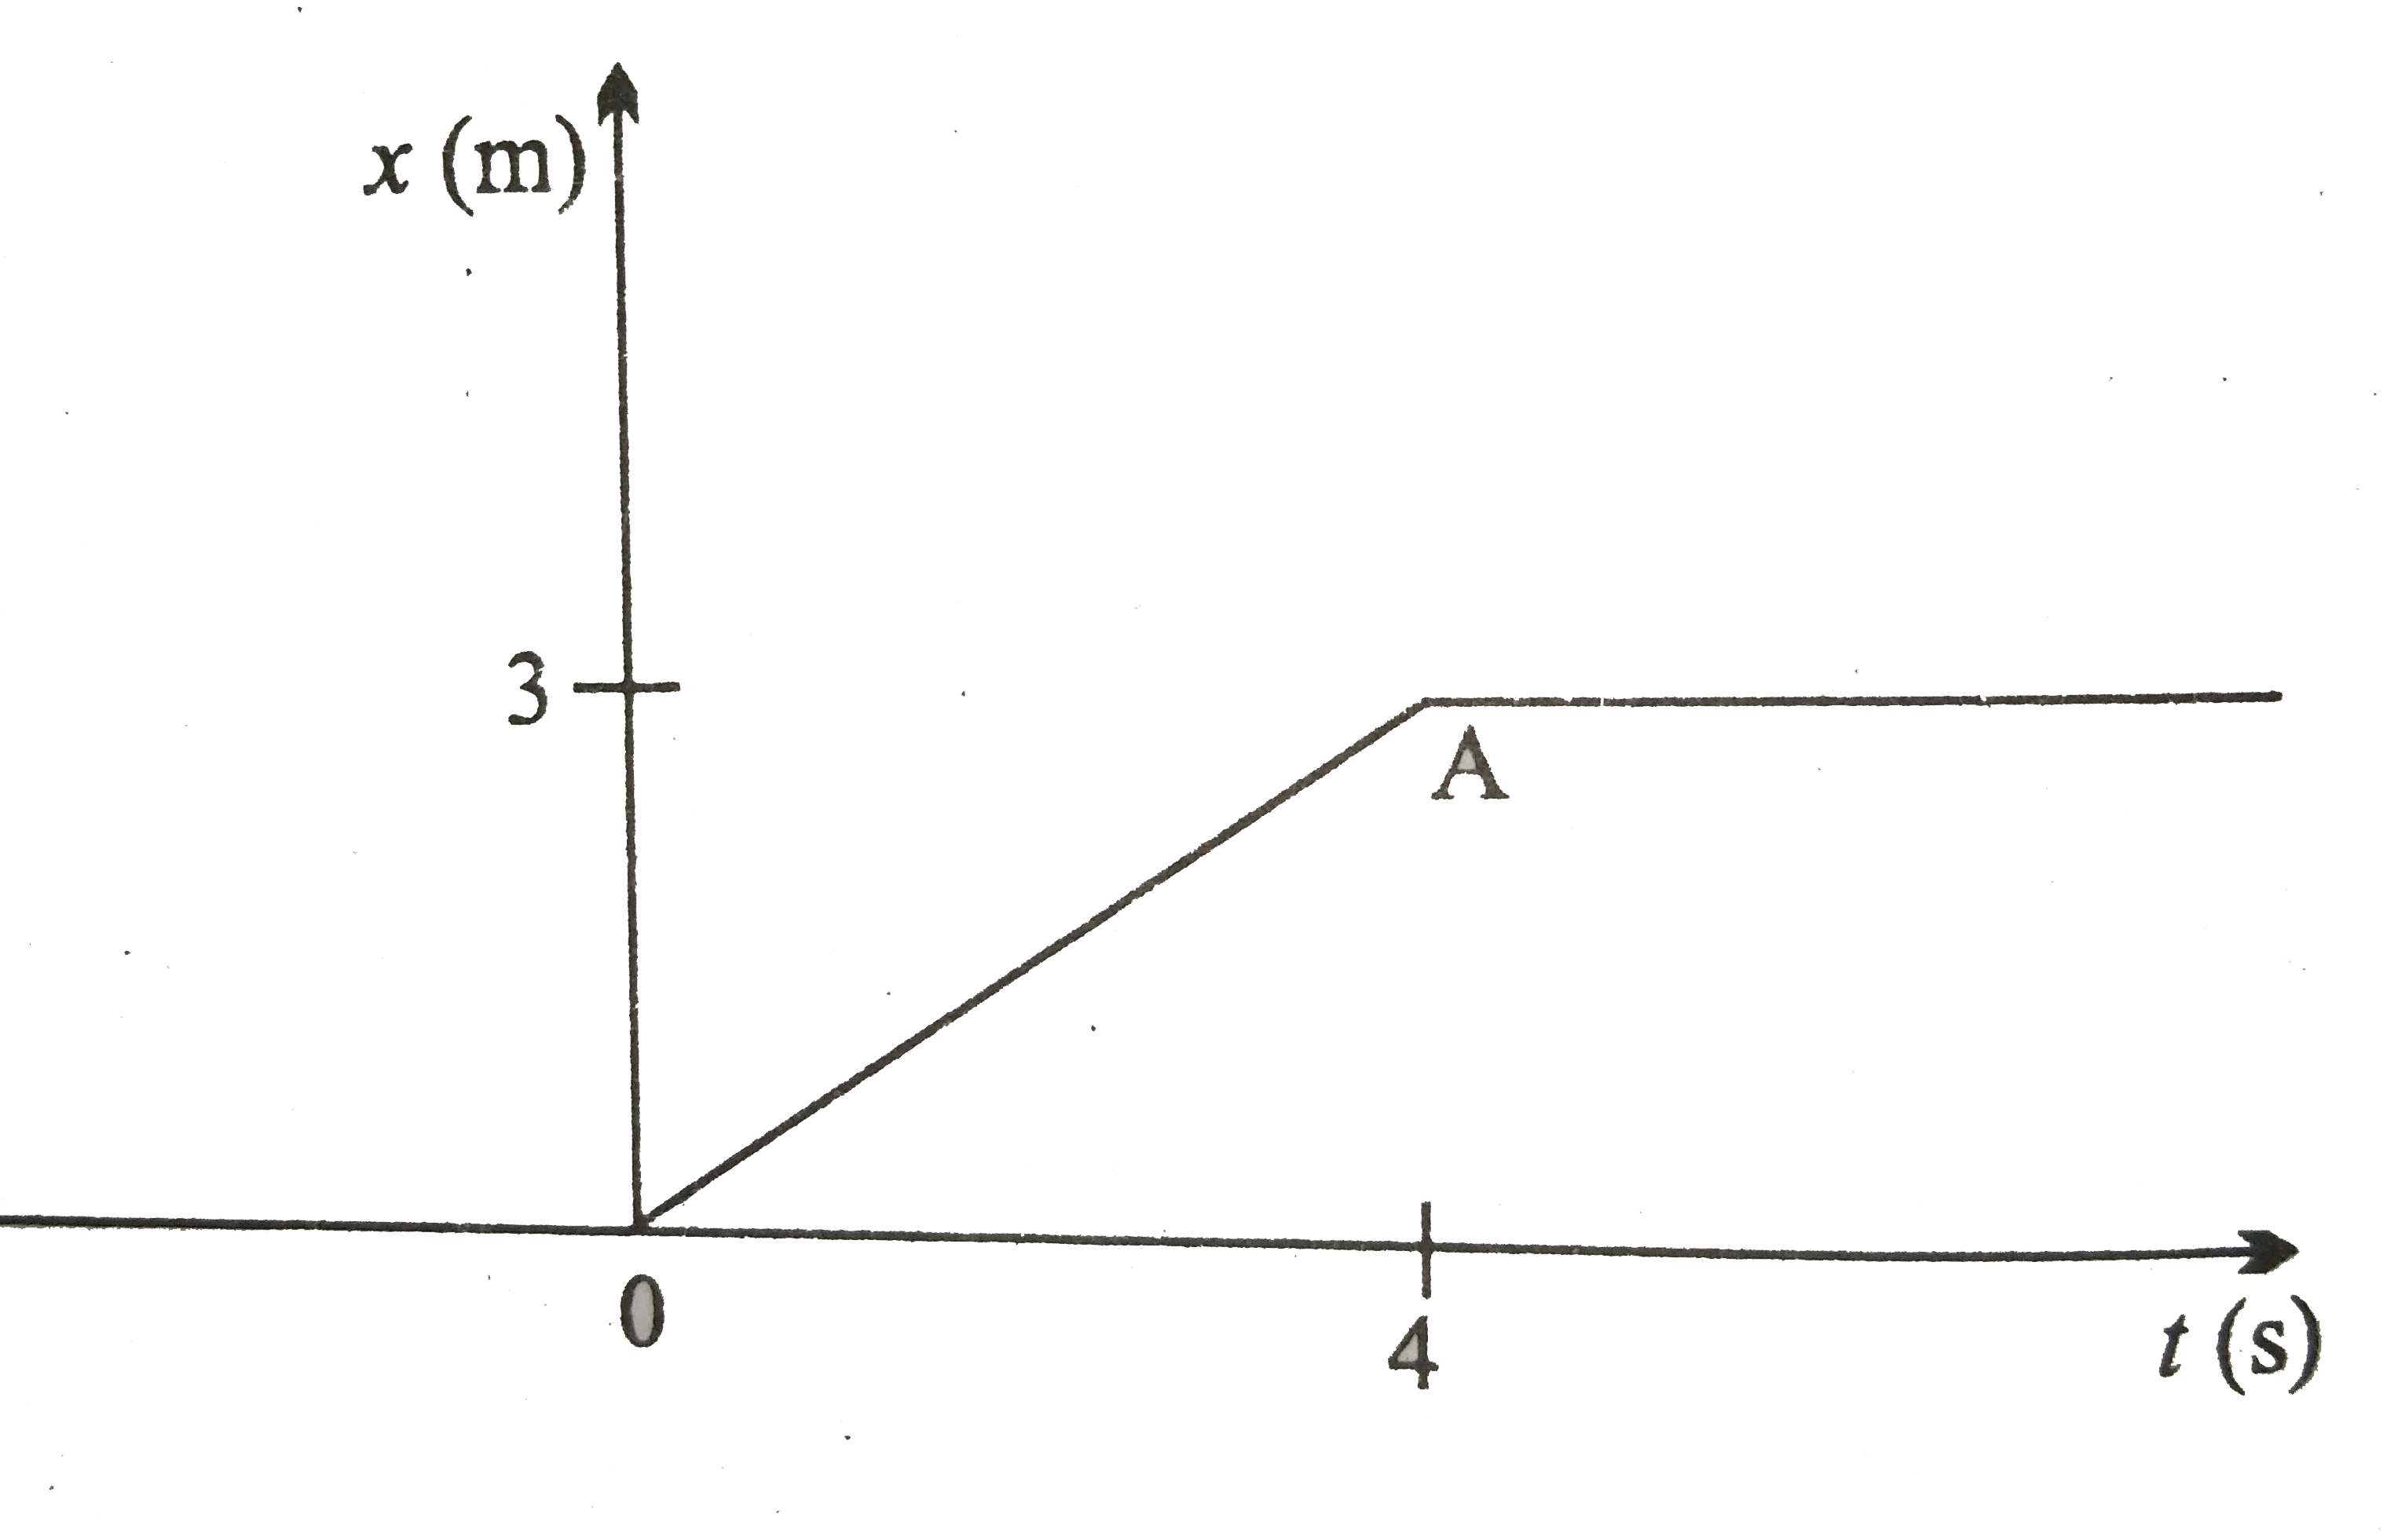 चित्र में 4kg संहति के  किसी पिंड का स्थिति - समय ग्राफ दर्शाया गया है ( a ) t lt 0 , t gt 4s, 0 lt t lt 4s  के लिए पिंड पर आरोपित बल क्या है ?    ( b ) t = 0 तथा t = 4s पर आवेग क्या है ? -   ( केवल एकविमीय गति  पर विचार कीजिए )